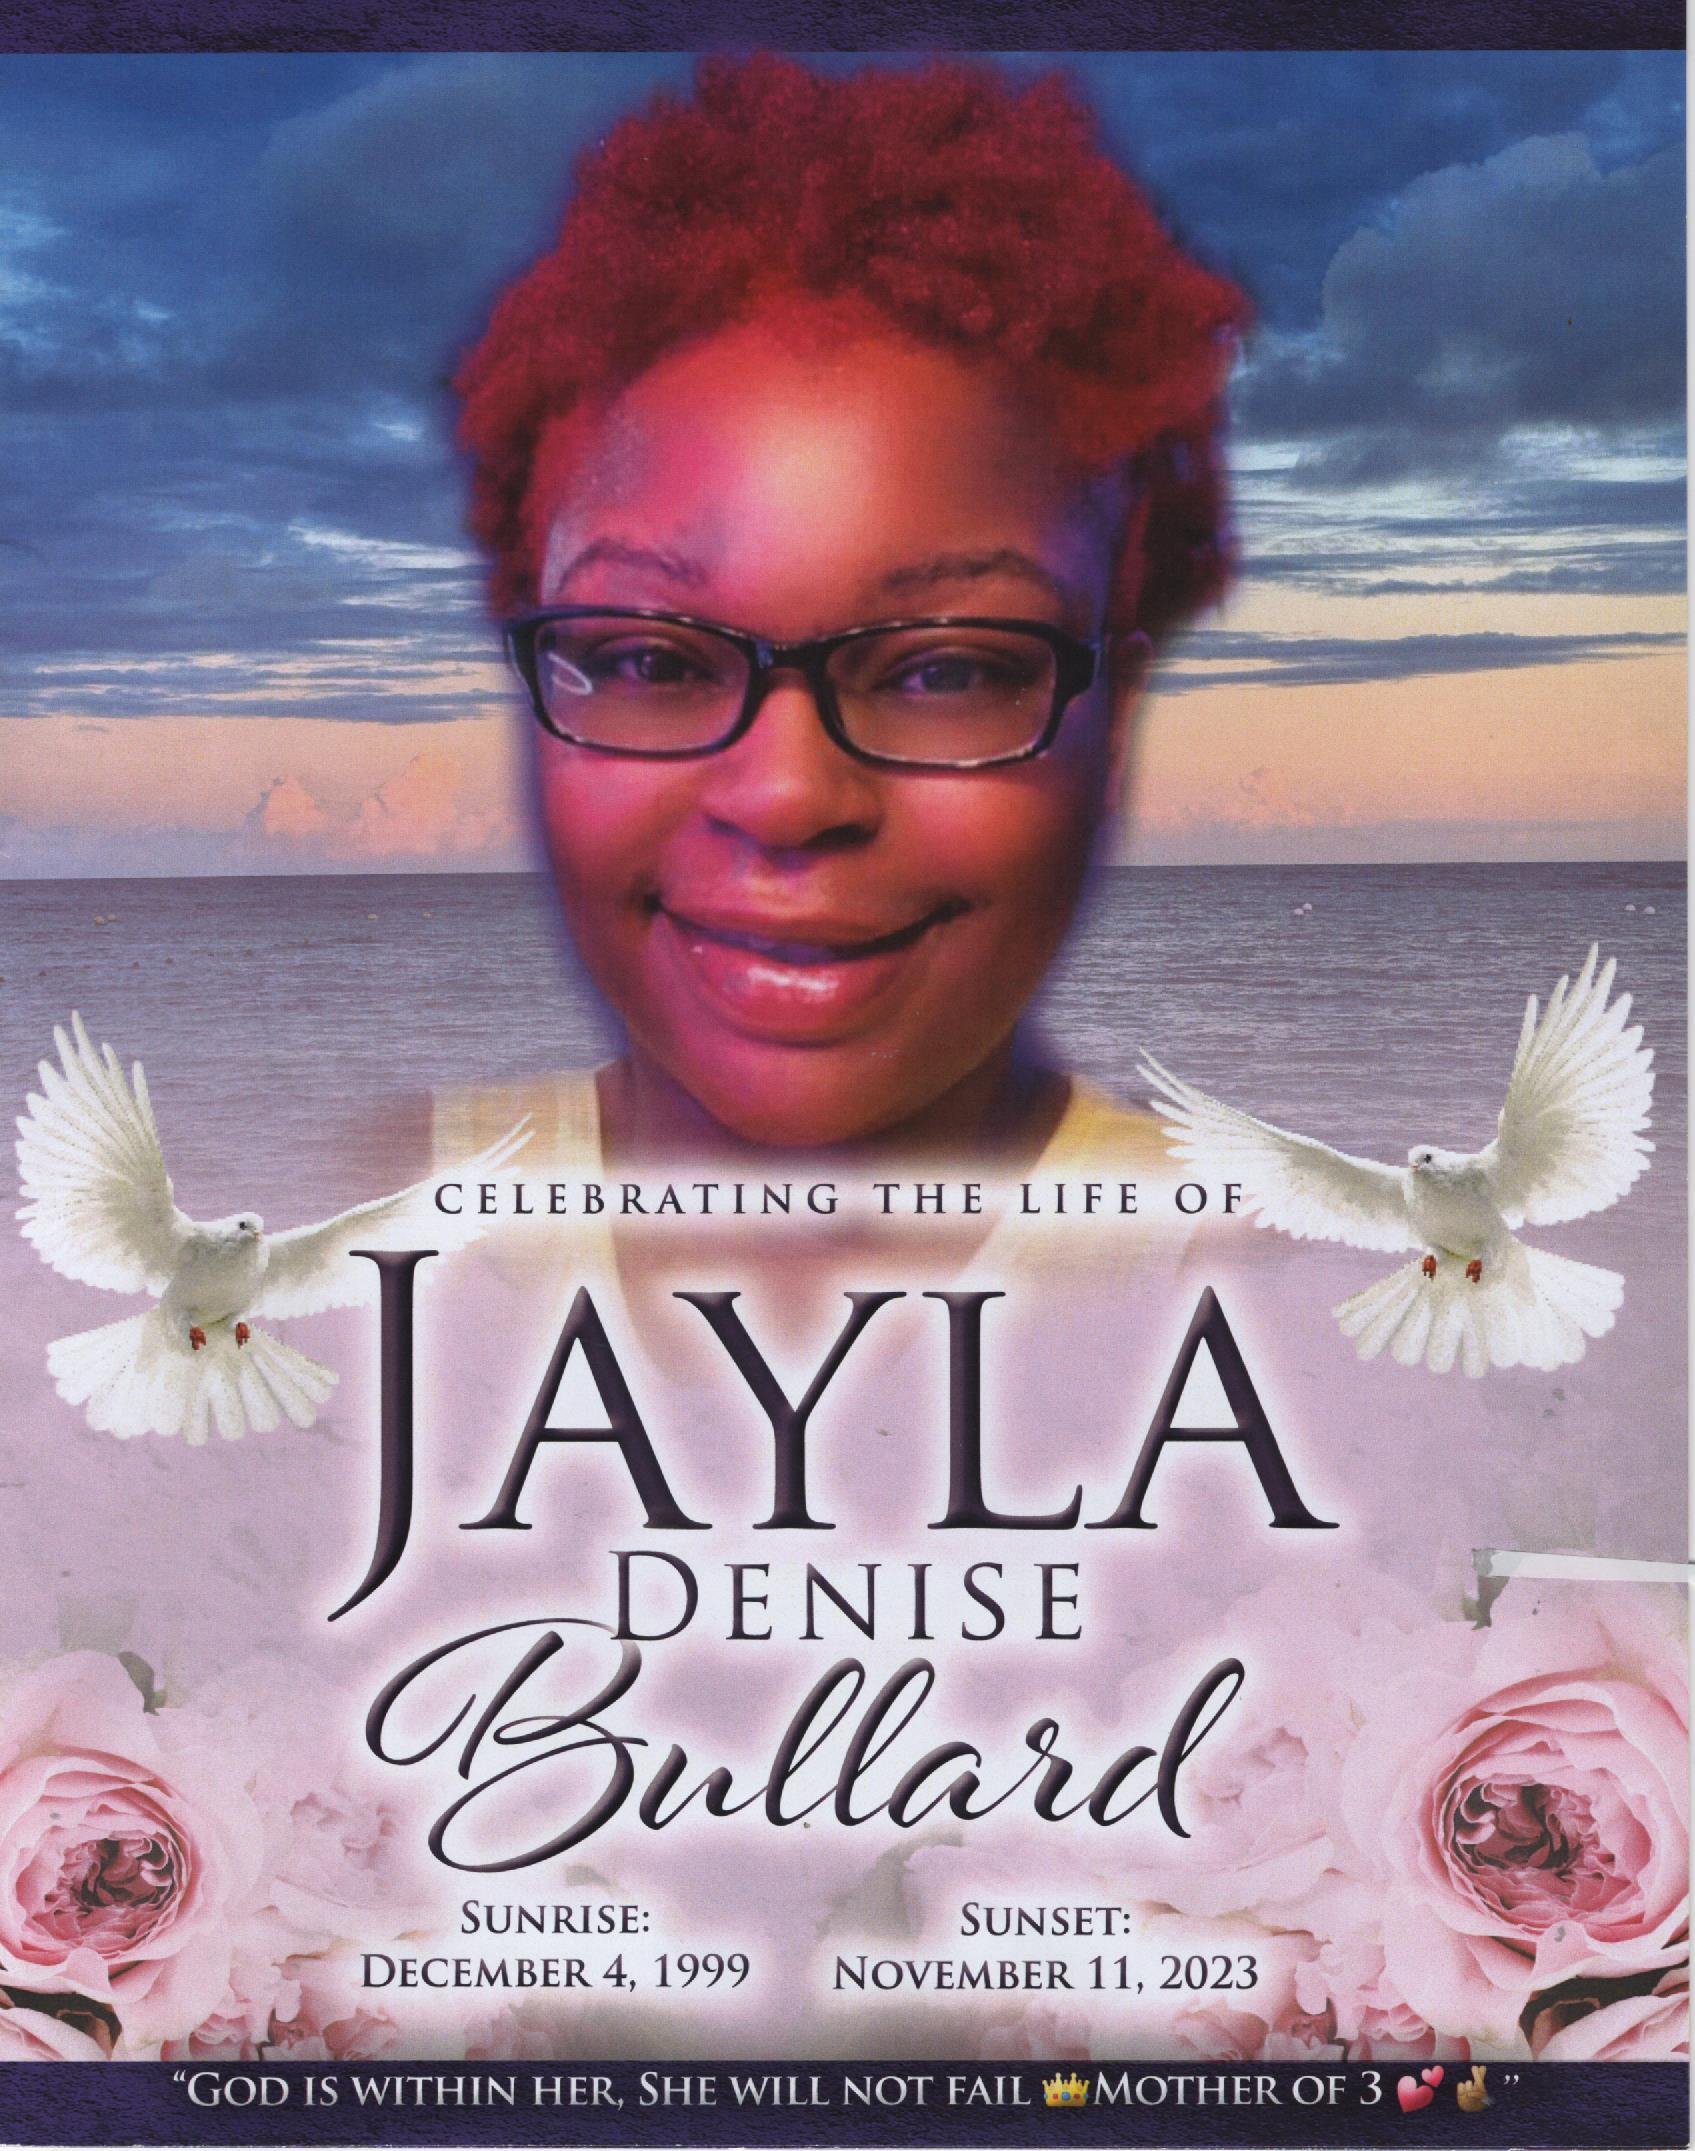 Jayla Denise Bullard